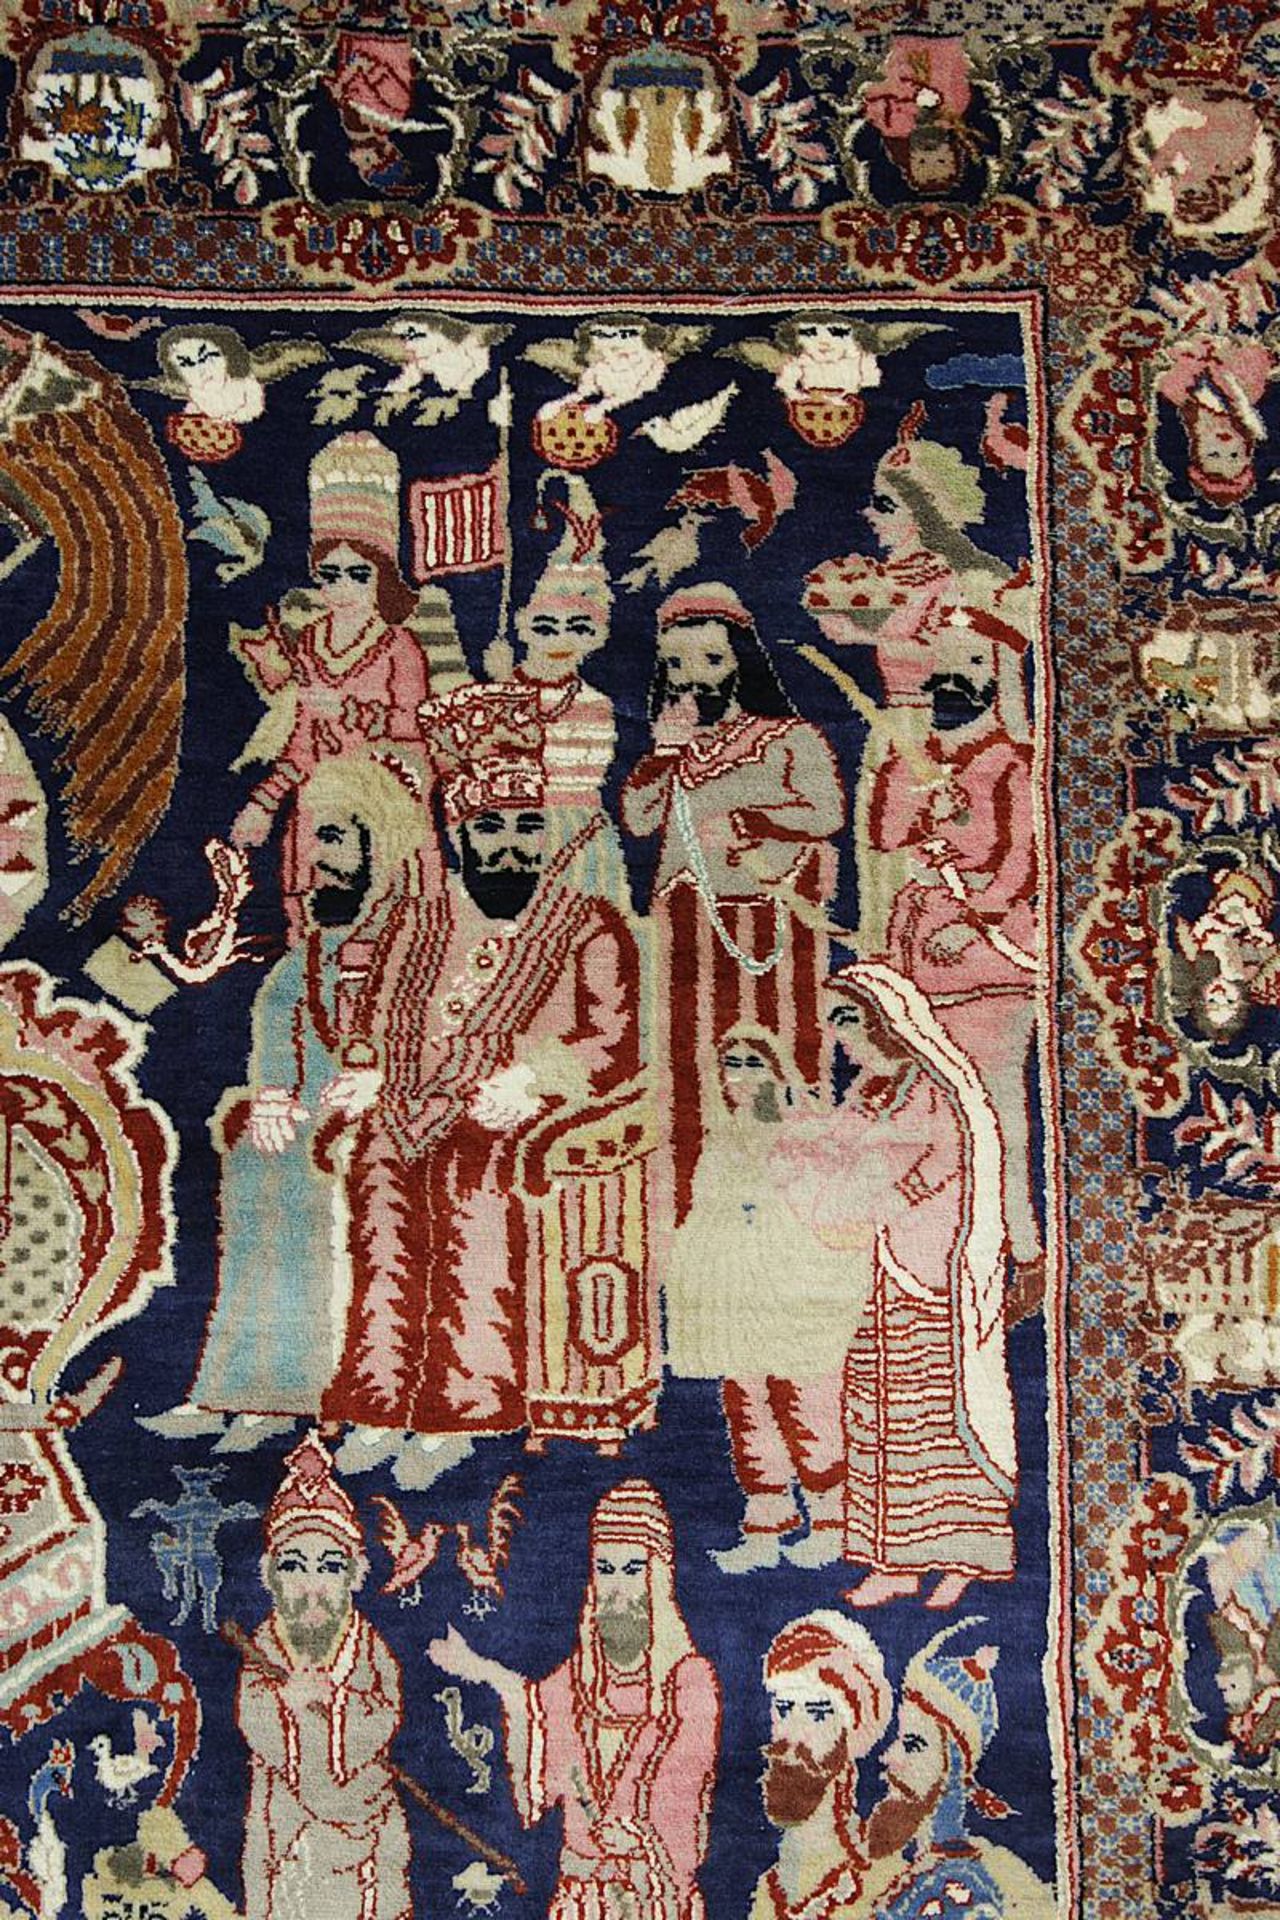 Aufwendiger detailreicher Figurenteppich, Kaschmar, Persien 2. H. 20. Jh., mit Paradiesmotiven u. - Bild 4 aus 14